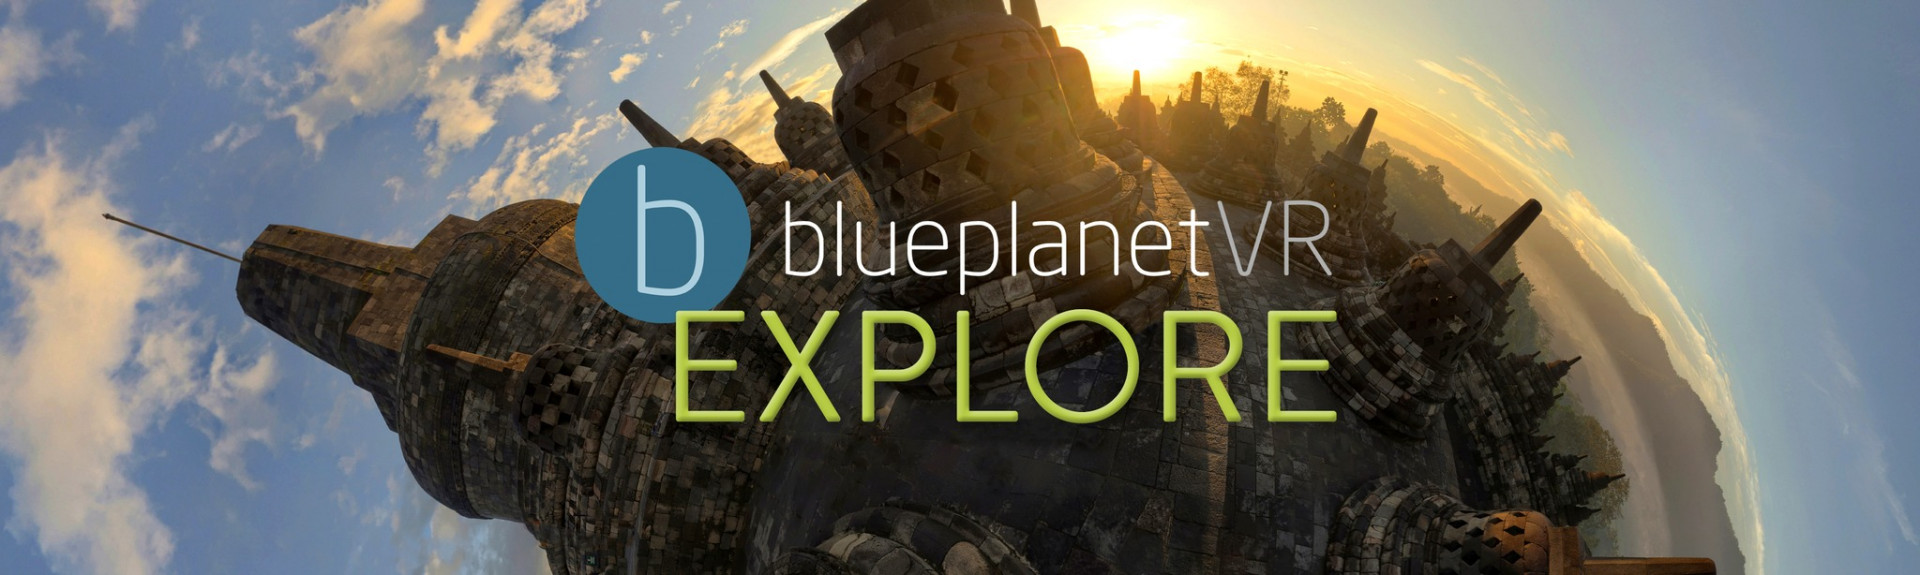 Blueplanet VR Explore